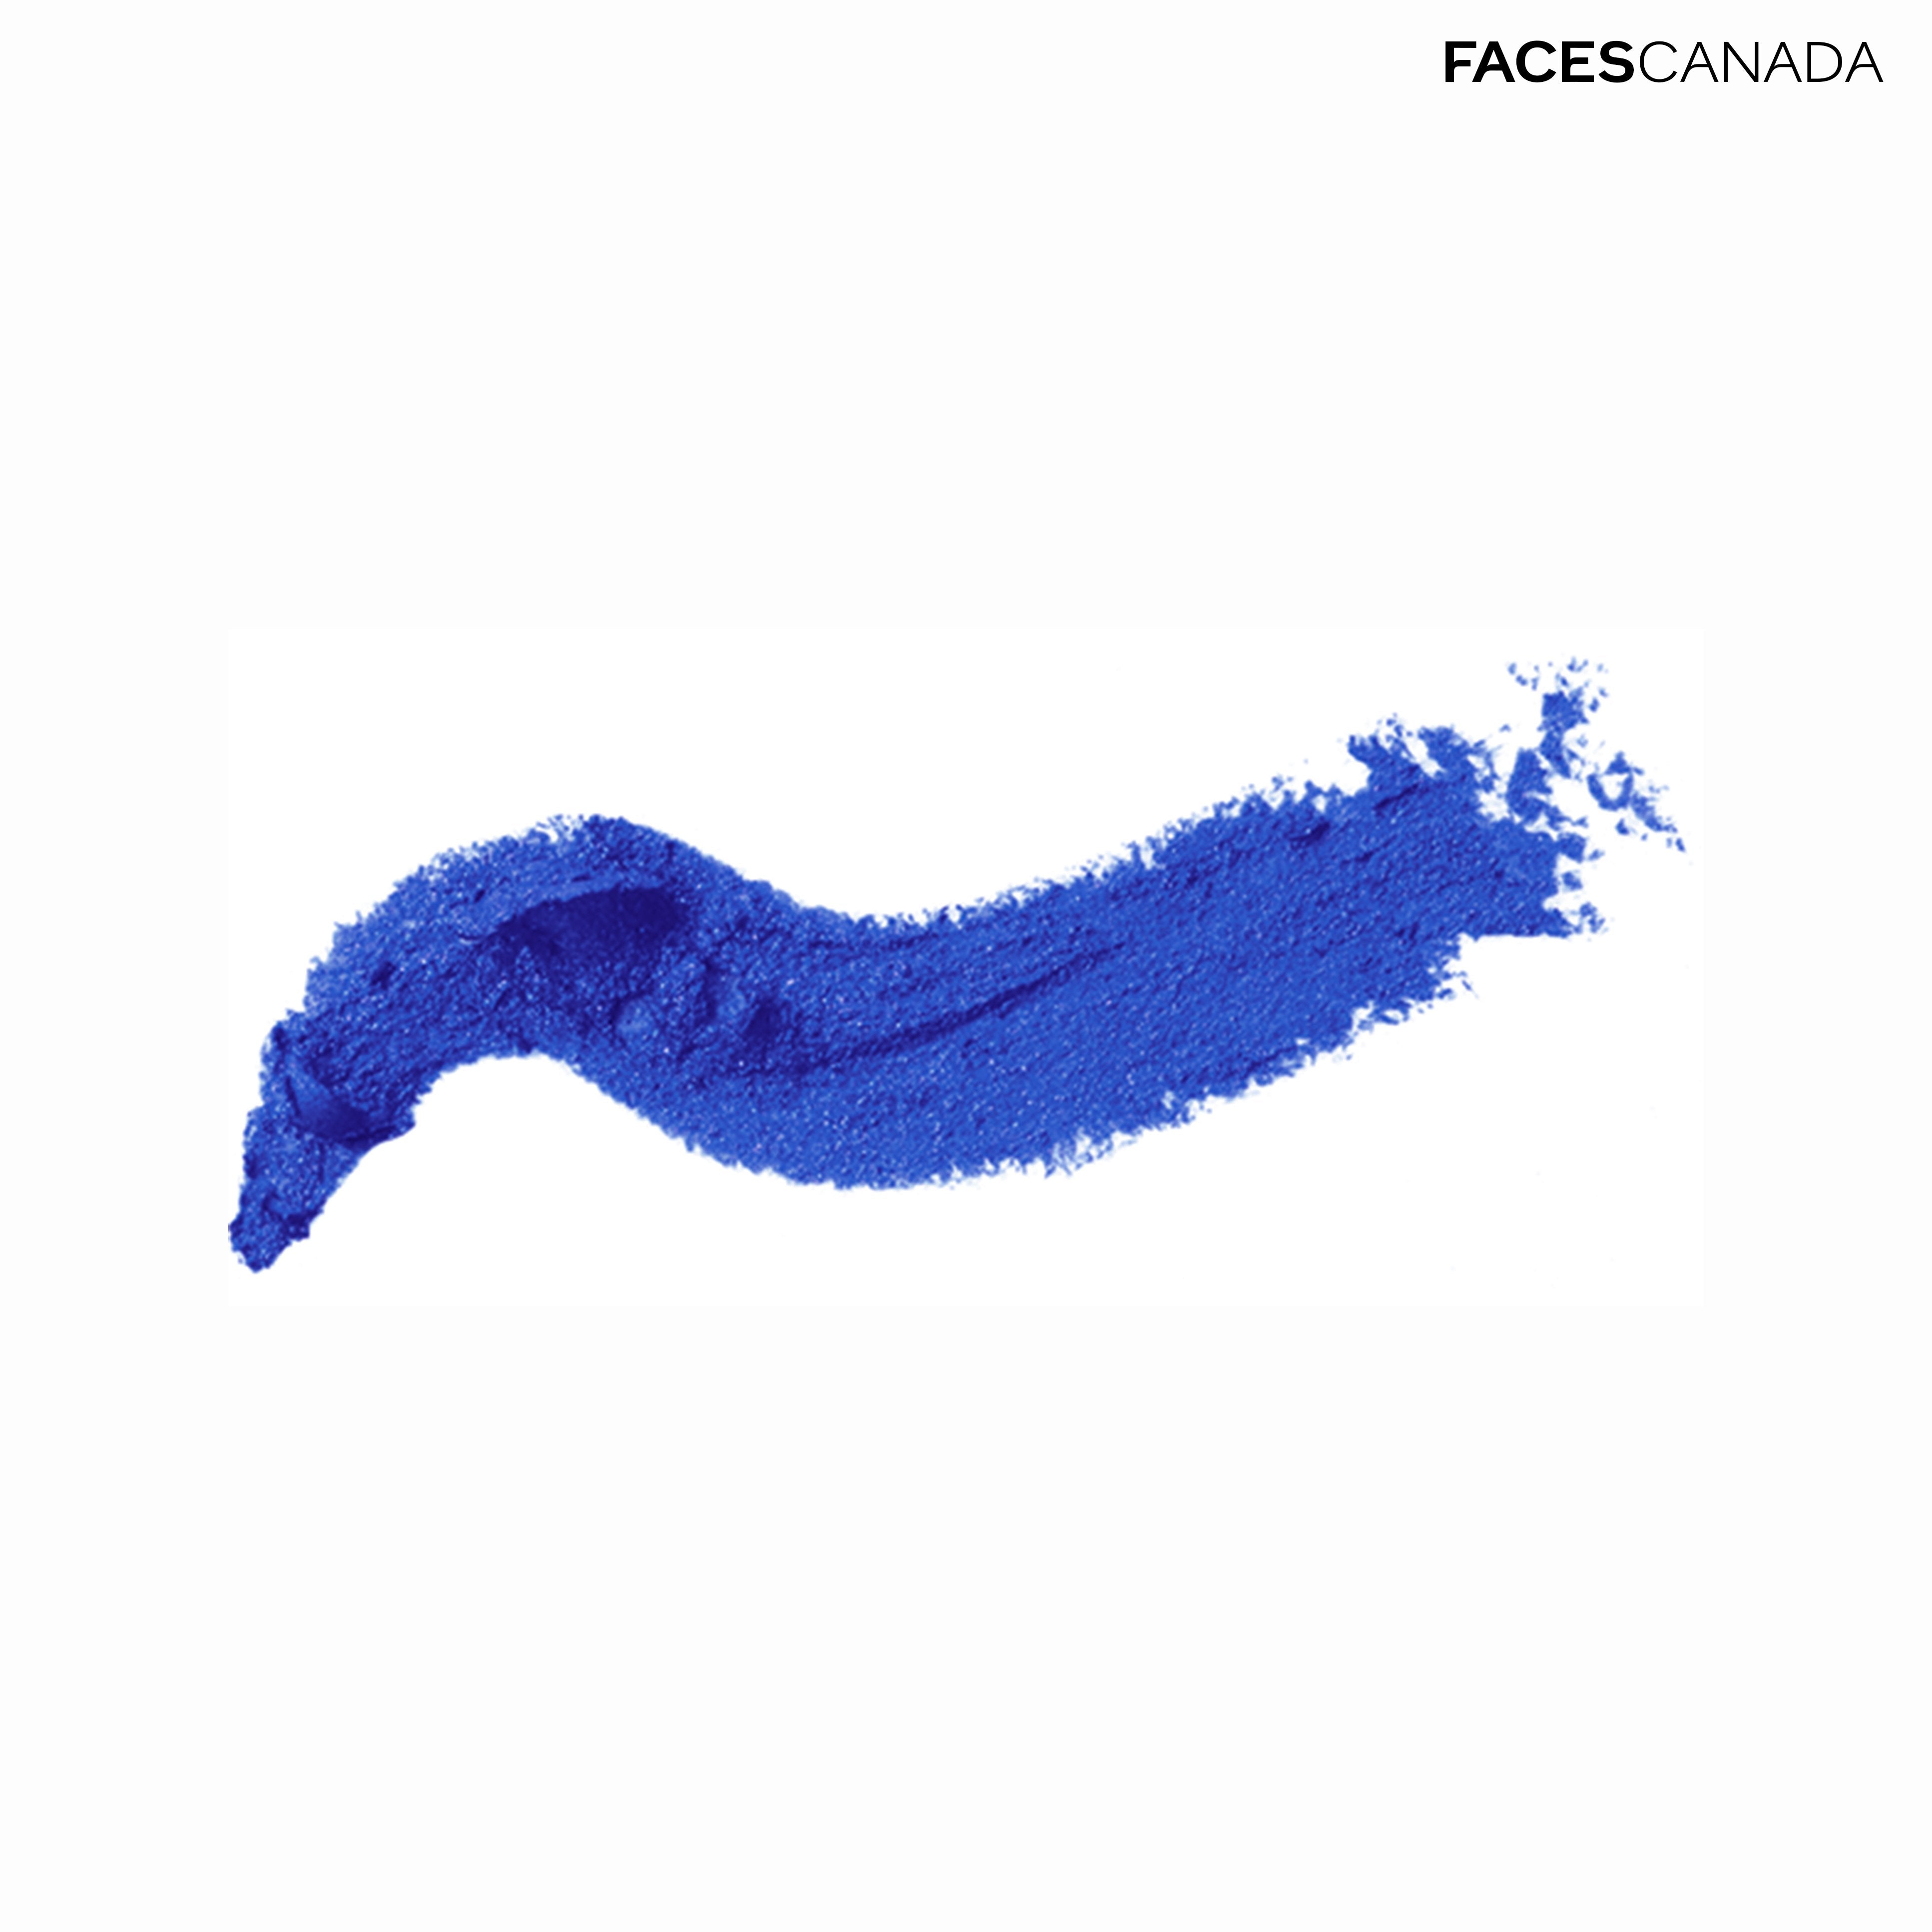 Faces Canada Eye Pencil Faces Canada